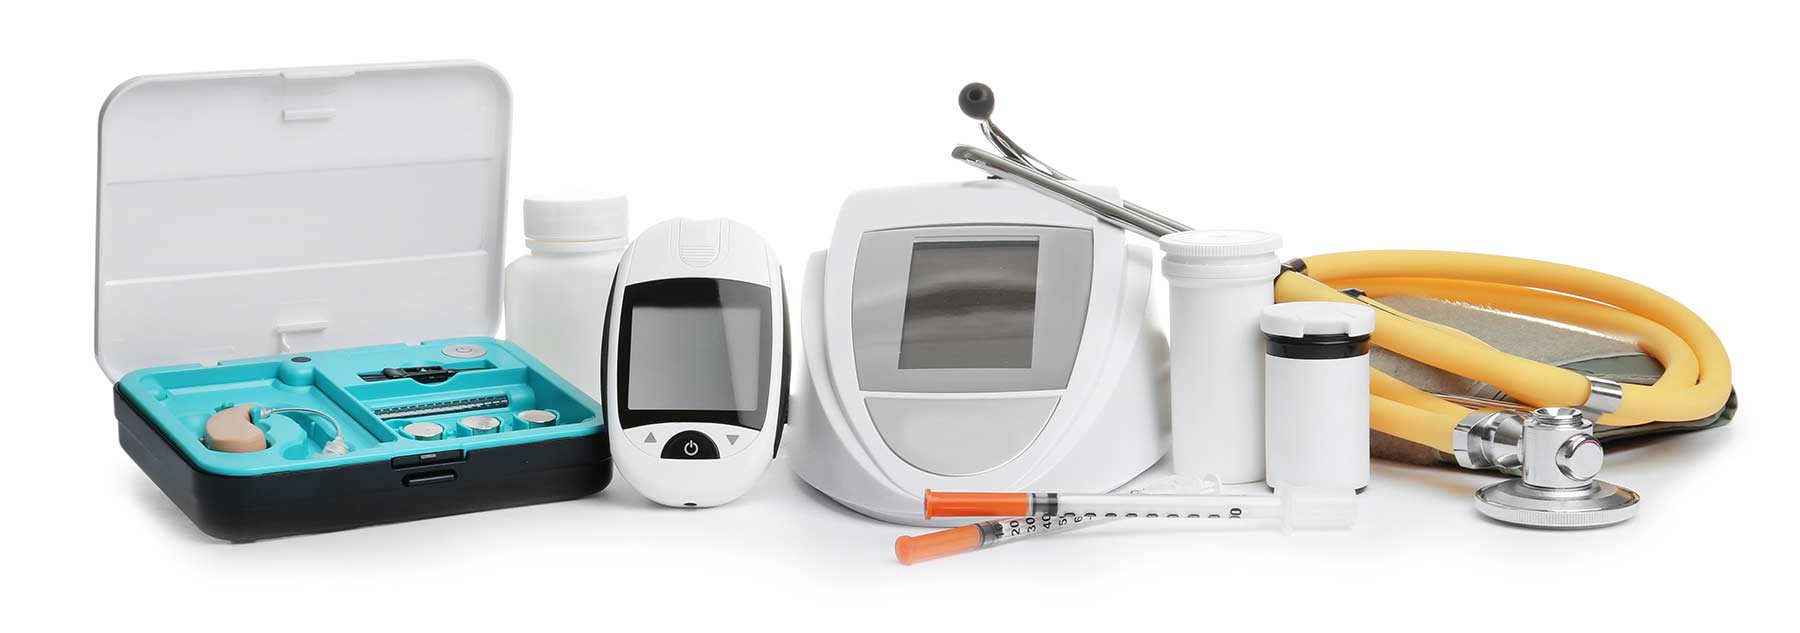 Medical Devices for registration